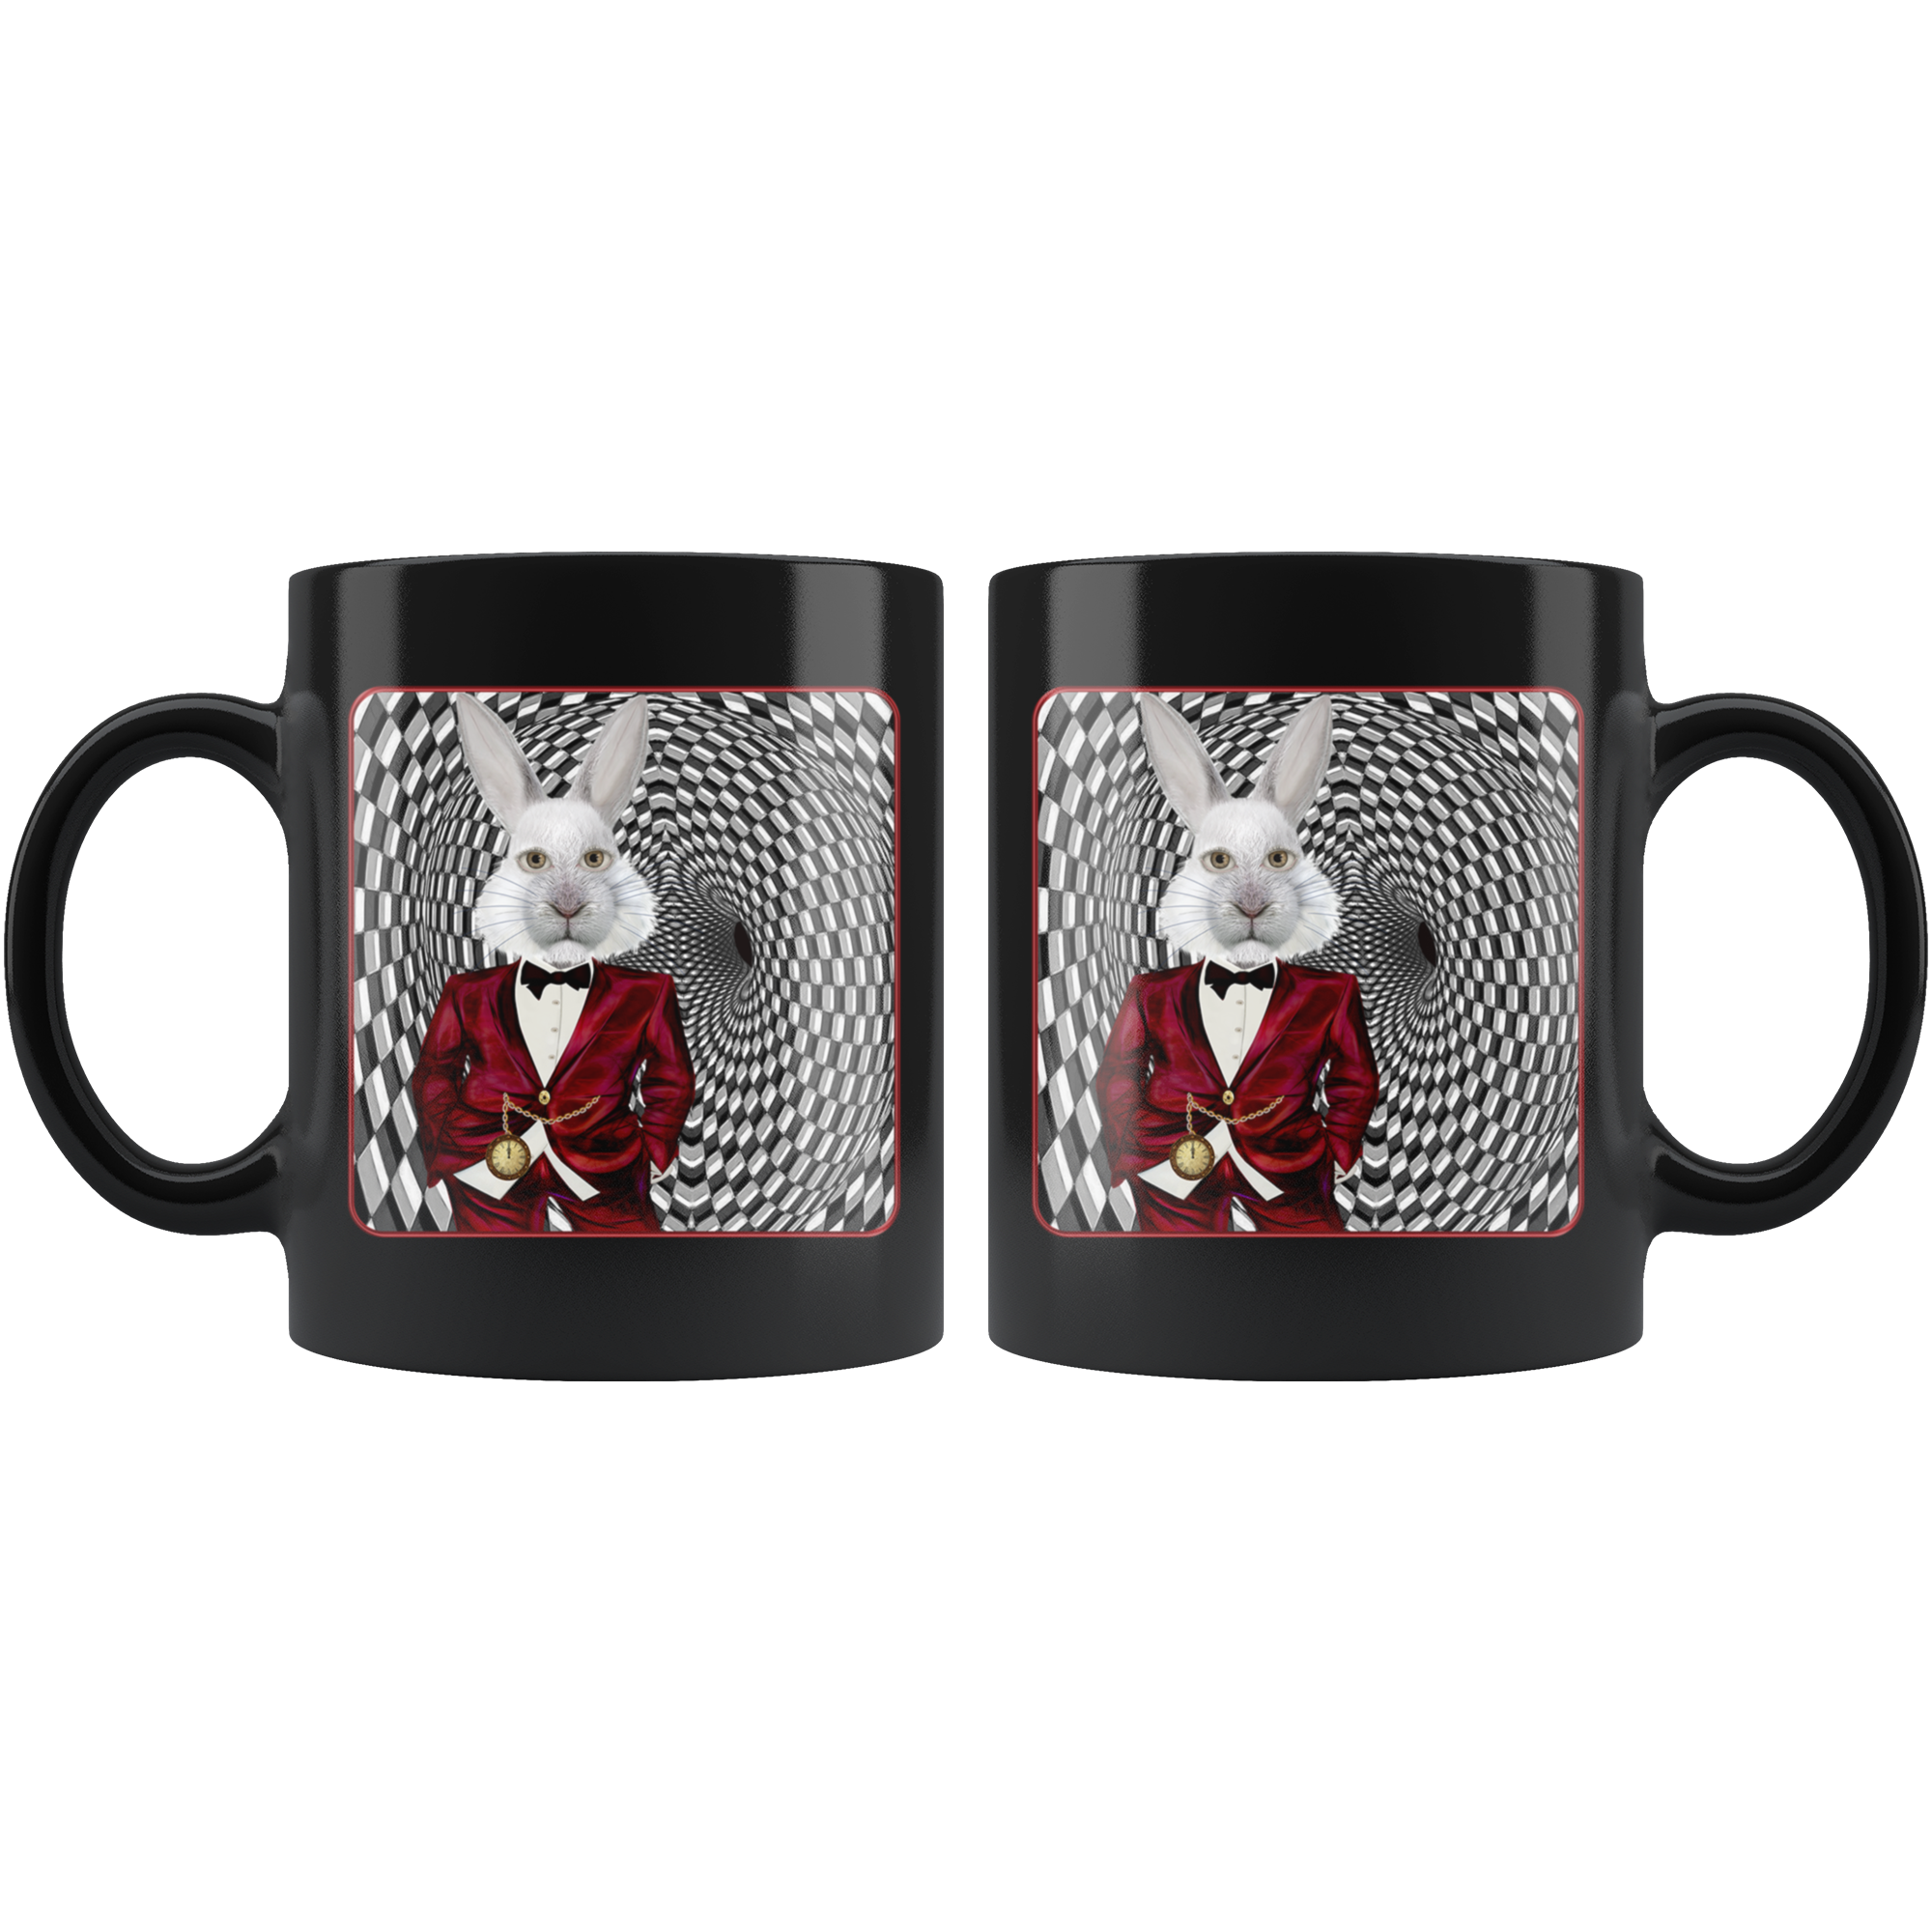 Portrait Of The White Rabbit - 11 oz black mug